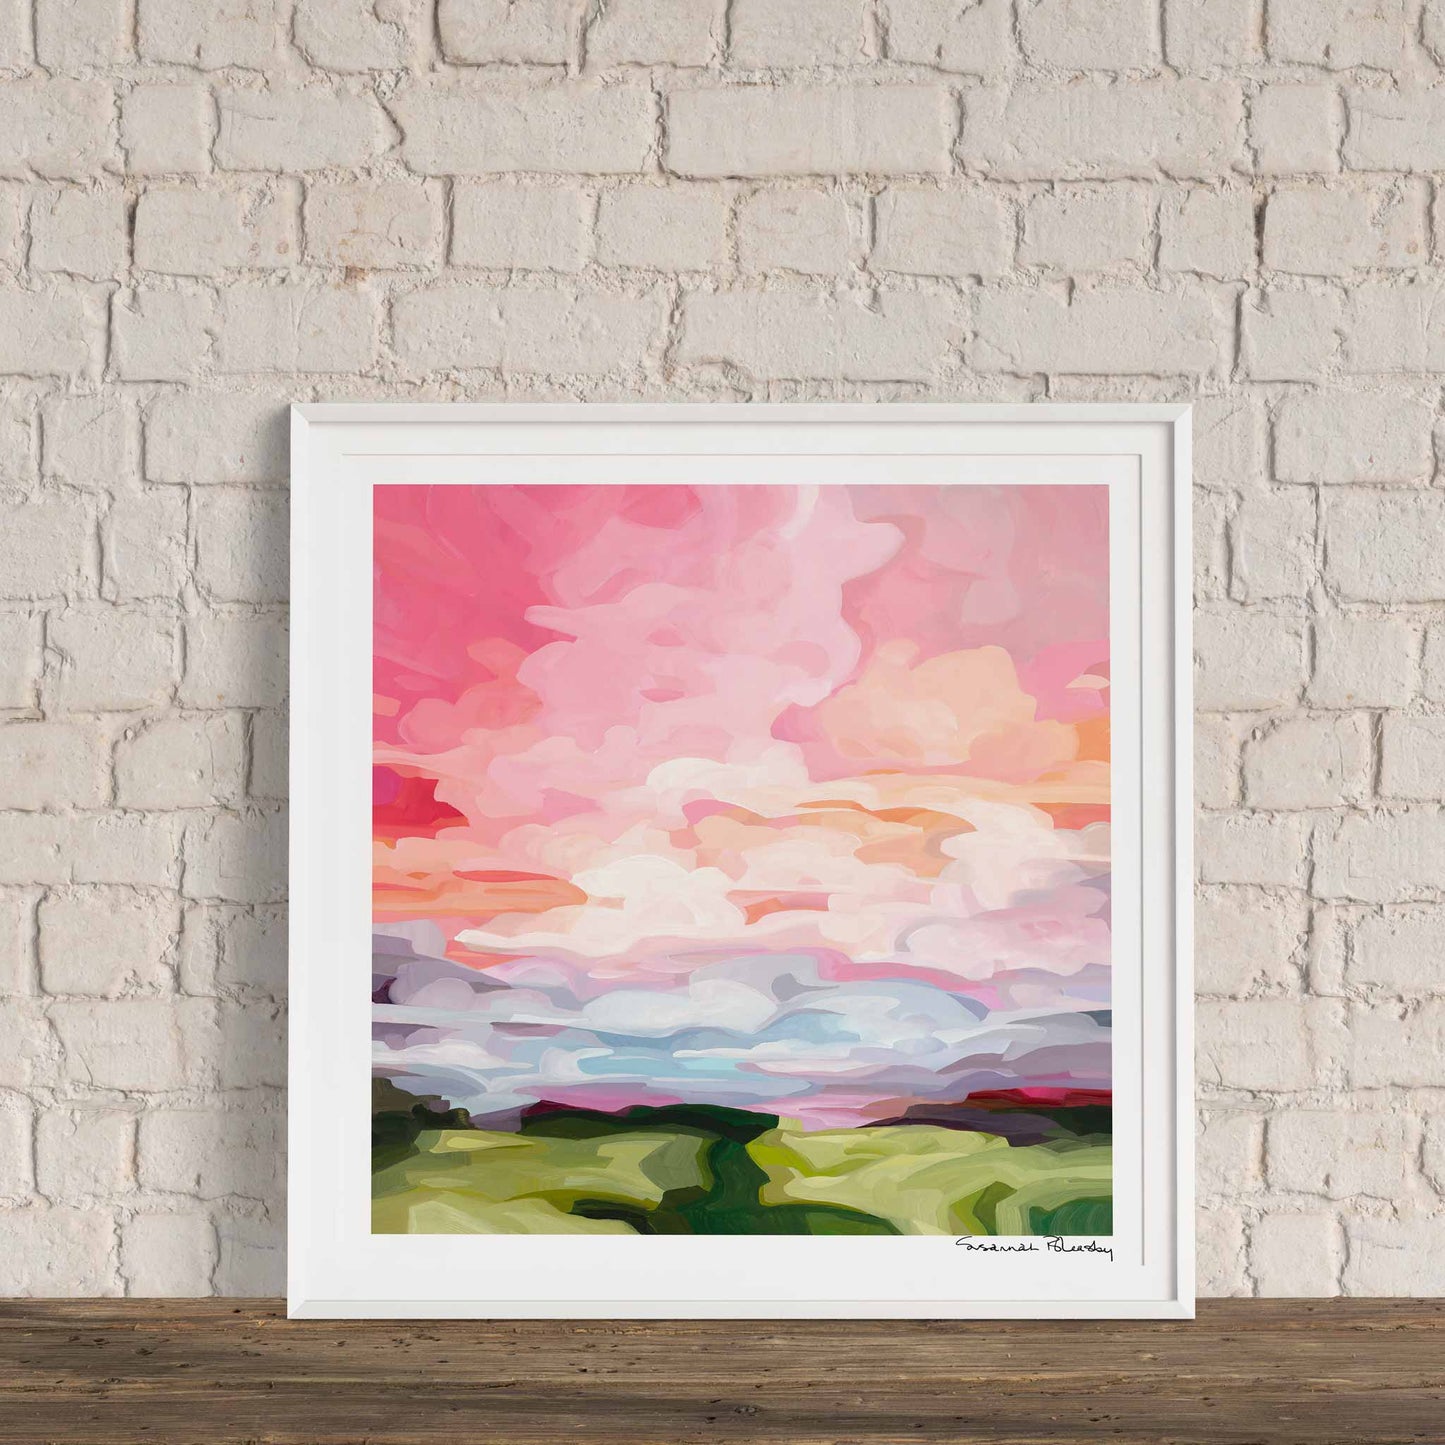 Acrylic sky painting peach pink morning sky framed wall art print by Canadian artist Susannah Bleasby